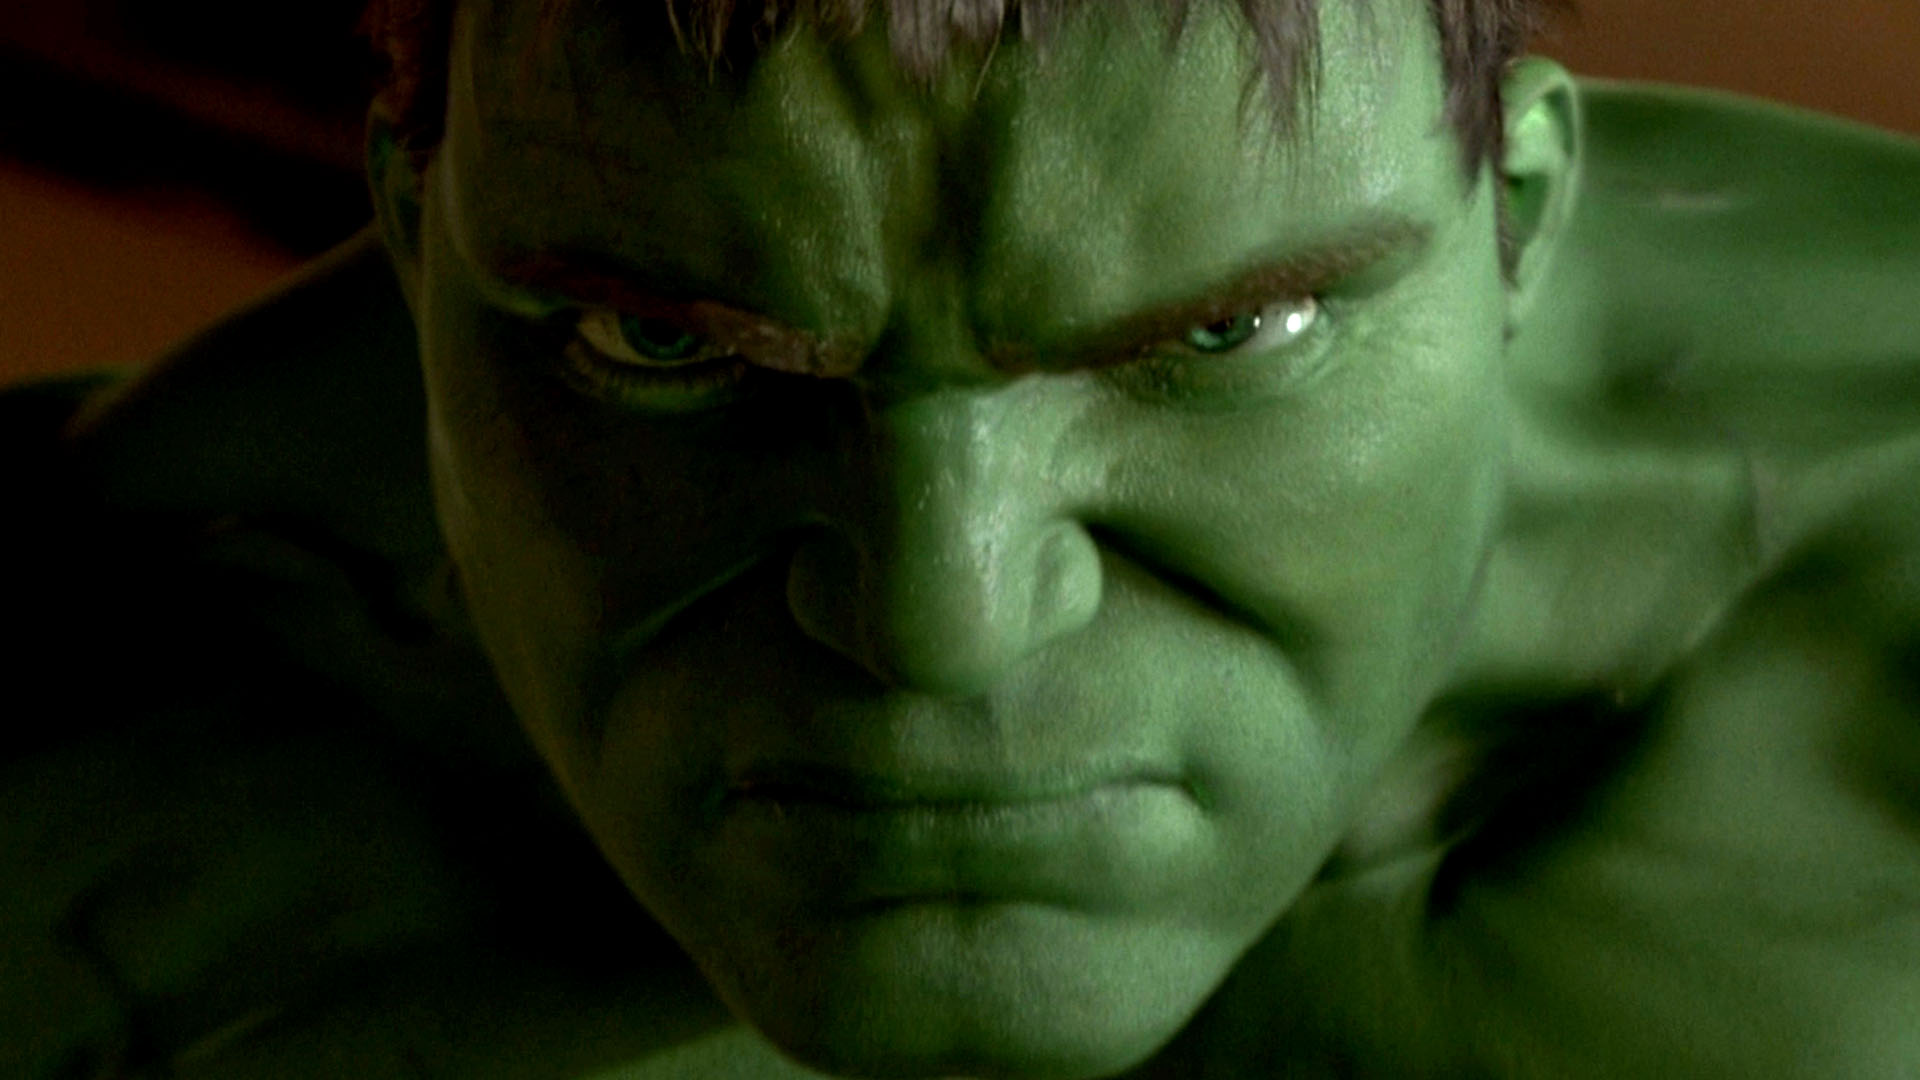 2003 Hulk